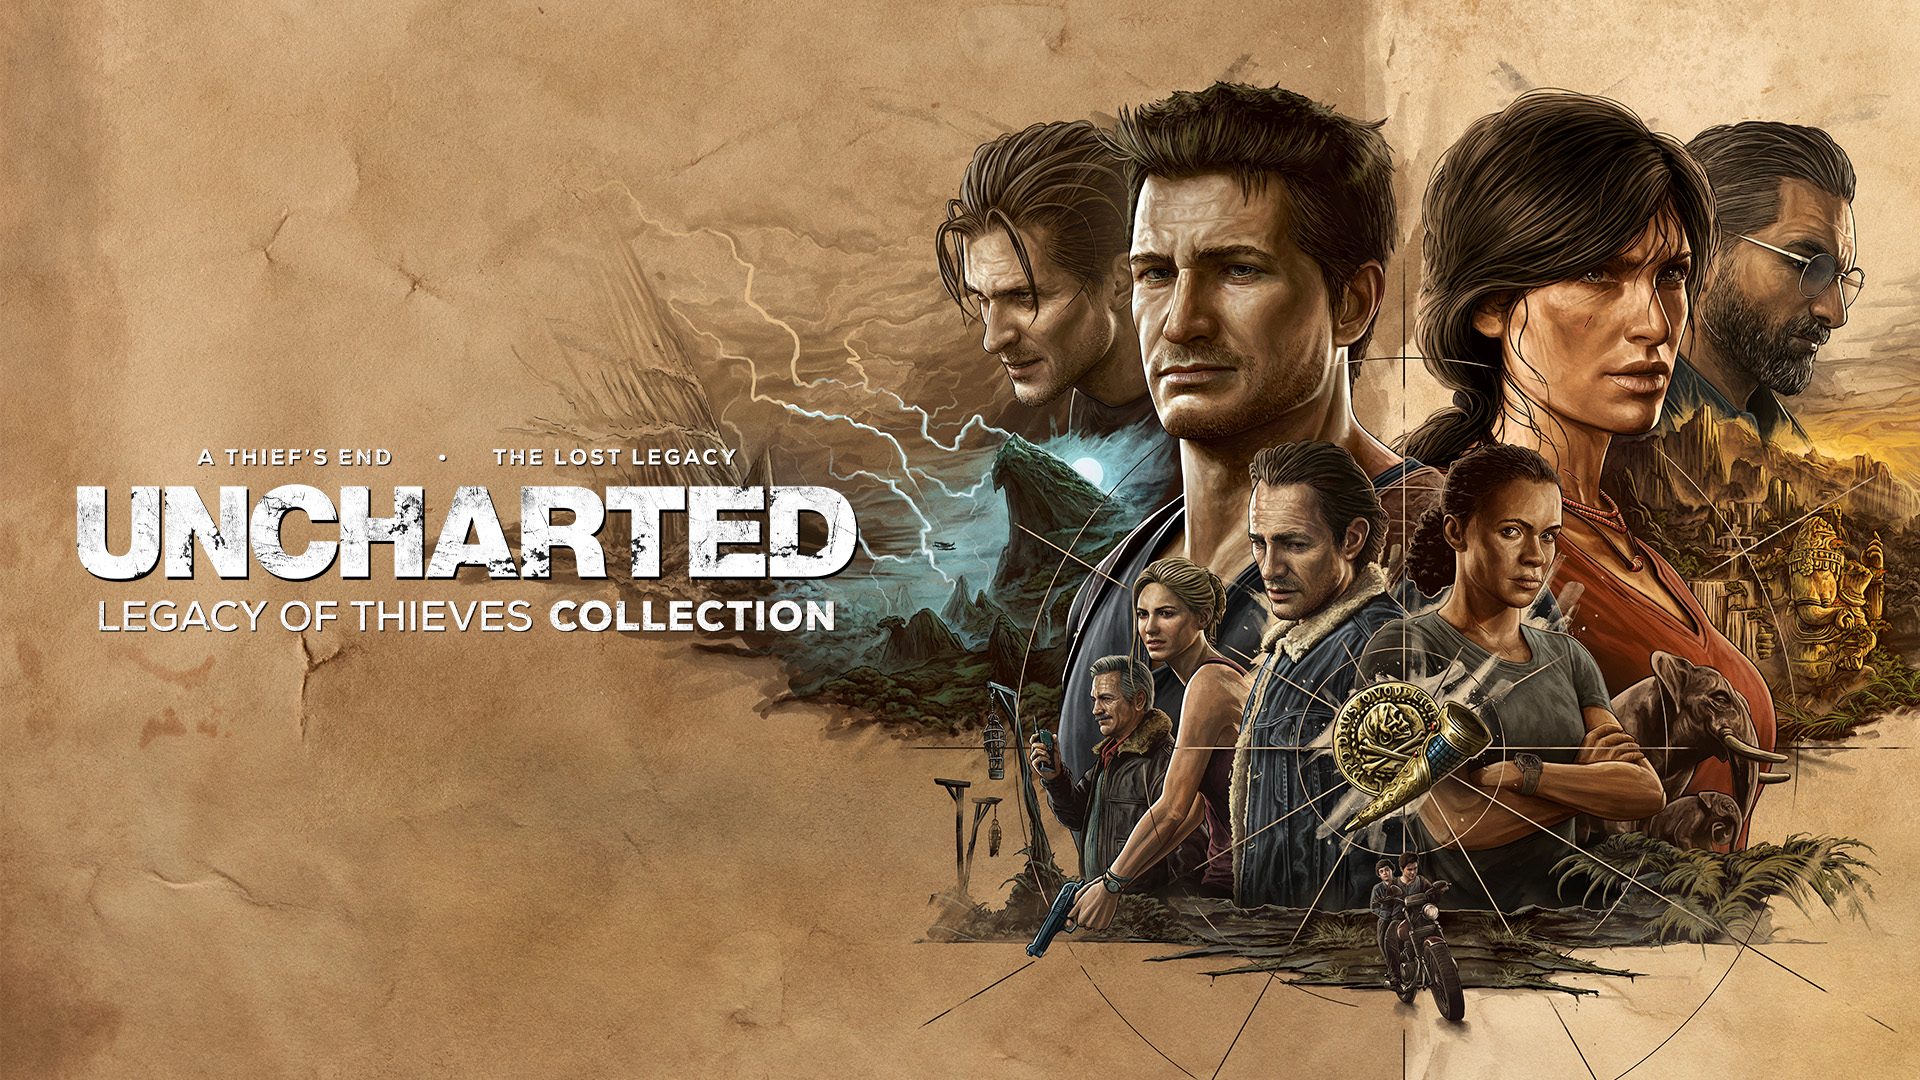 Filme de Uncharted está prestes a ser produzido, segundo diretor - Canaltech